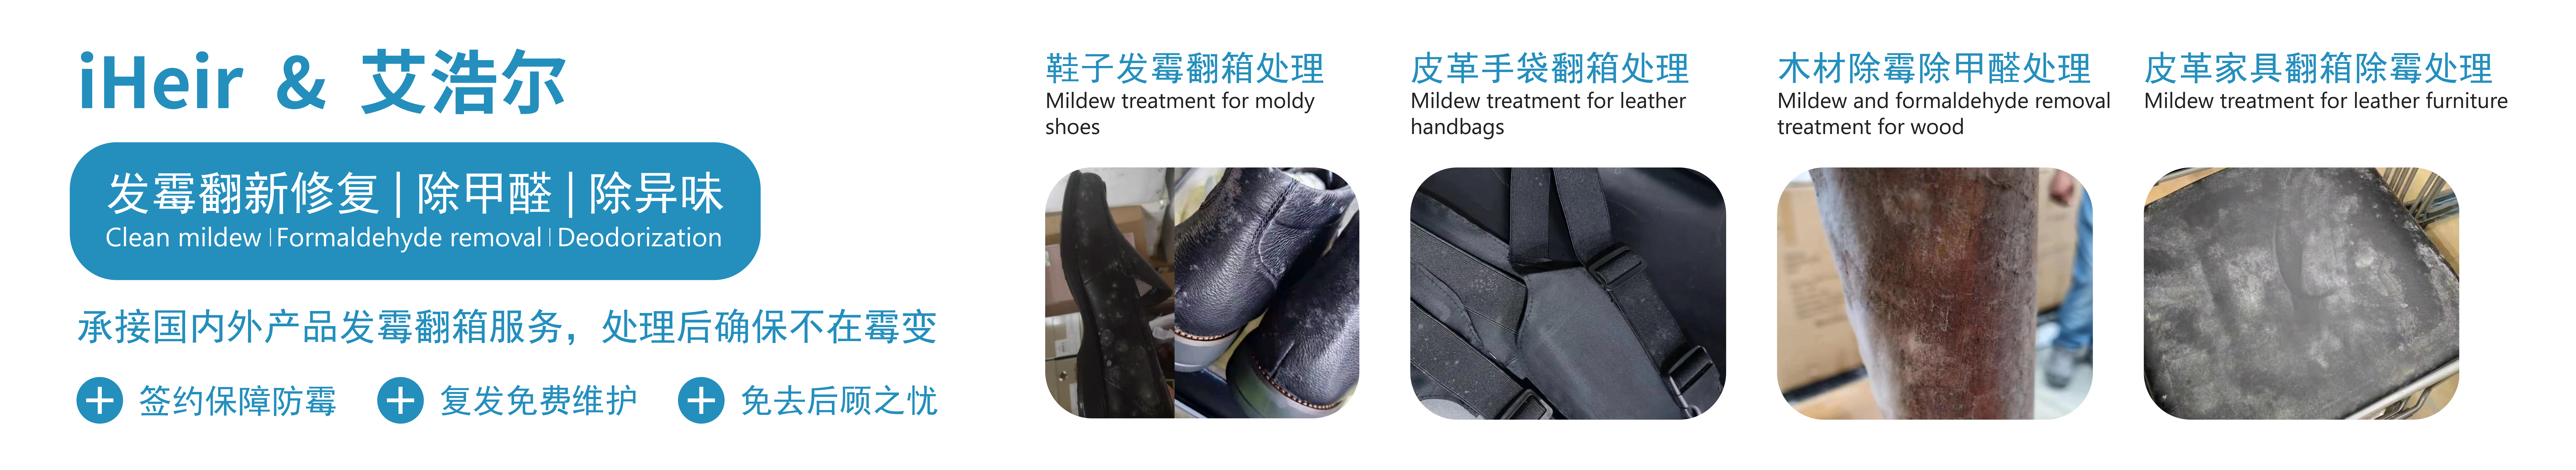 广州箱包防霉剂 皮具护理剂-箱包防霉处理方案